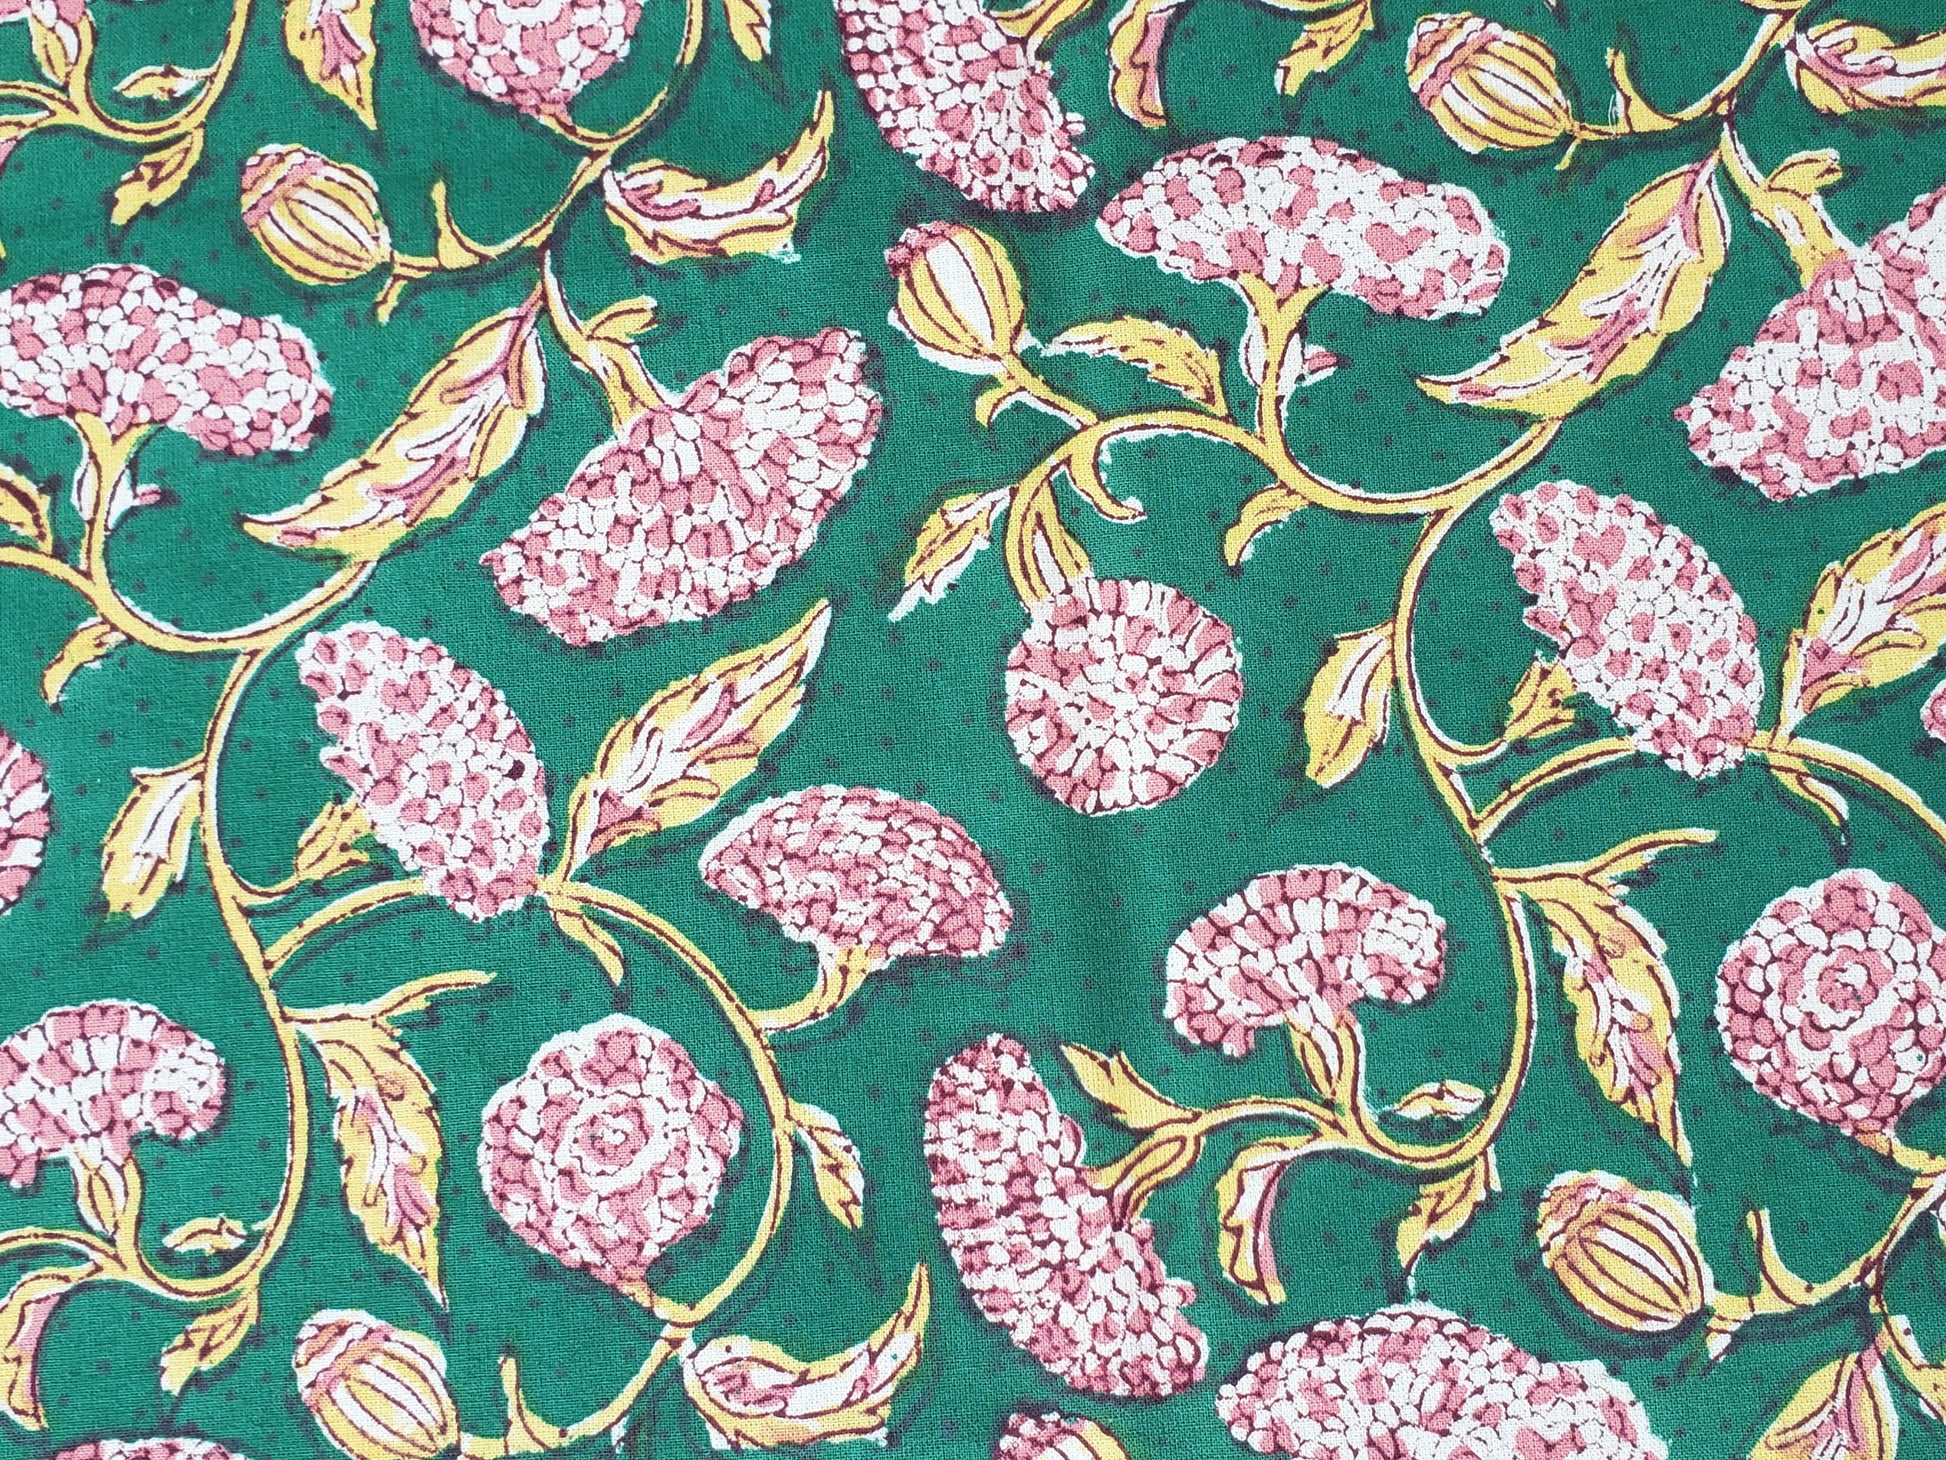 Detalle de estampado de sobrecama 100% algodón estampado a mano, base verde obscuro con flores rosas. Hecho en la India.